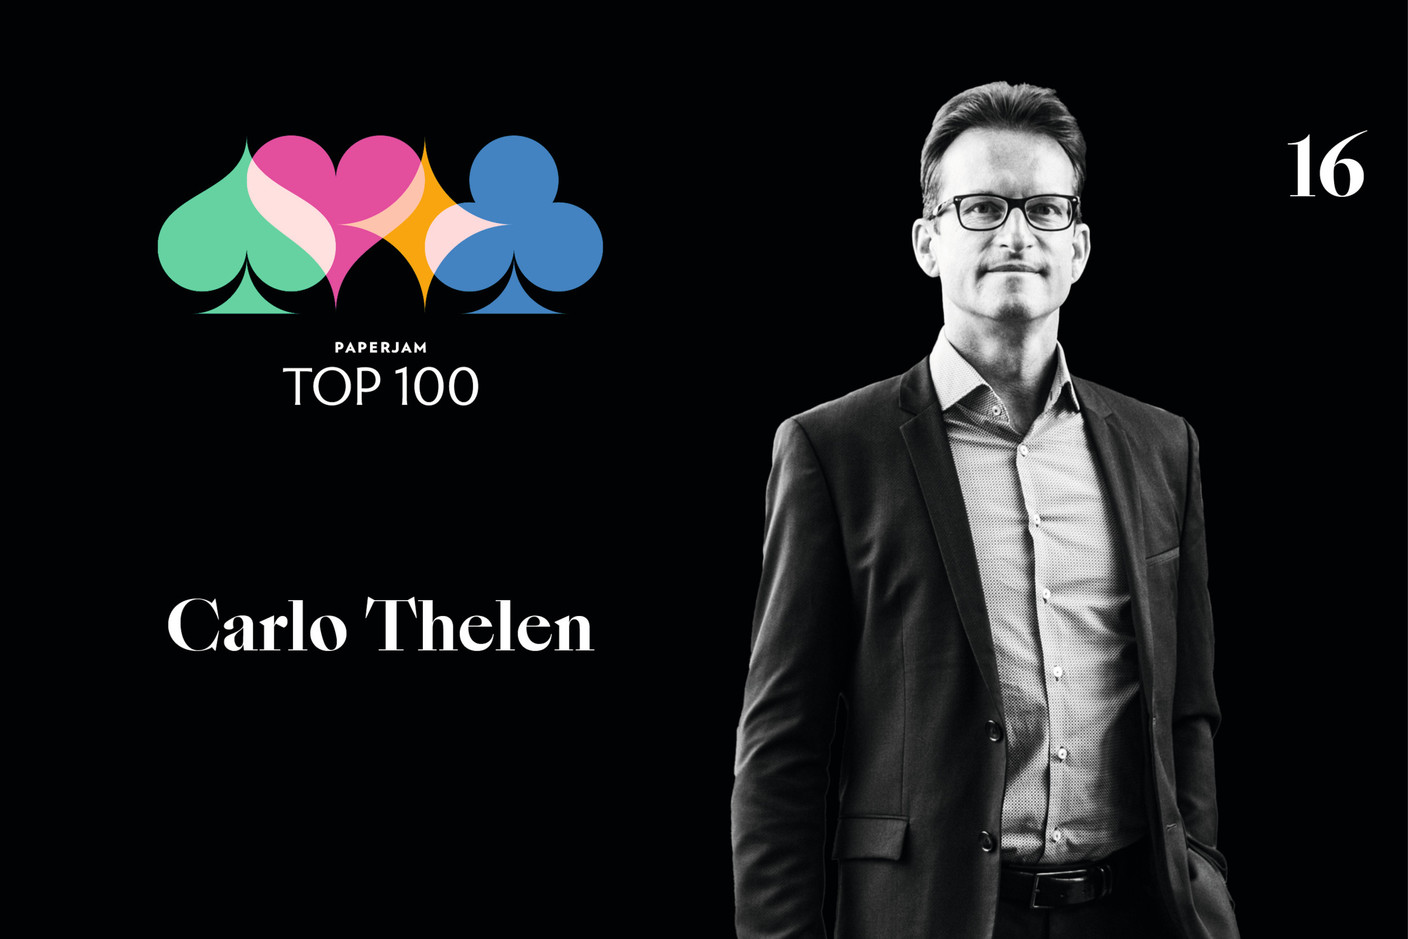 Carlo Thelen, 16e du Paperjam Top 100 2020. (Illustration: Maison Moderne)